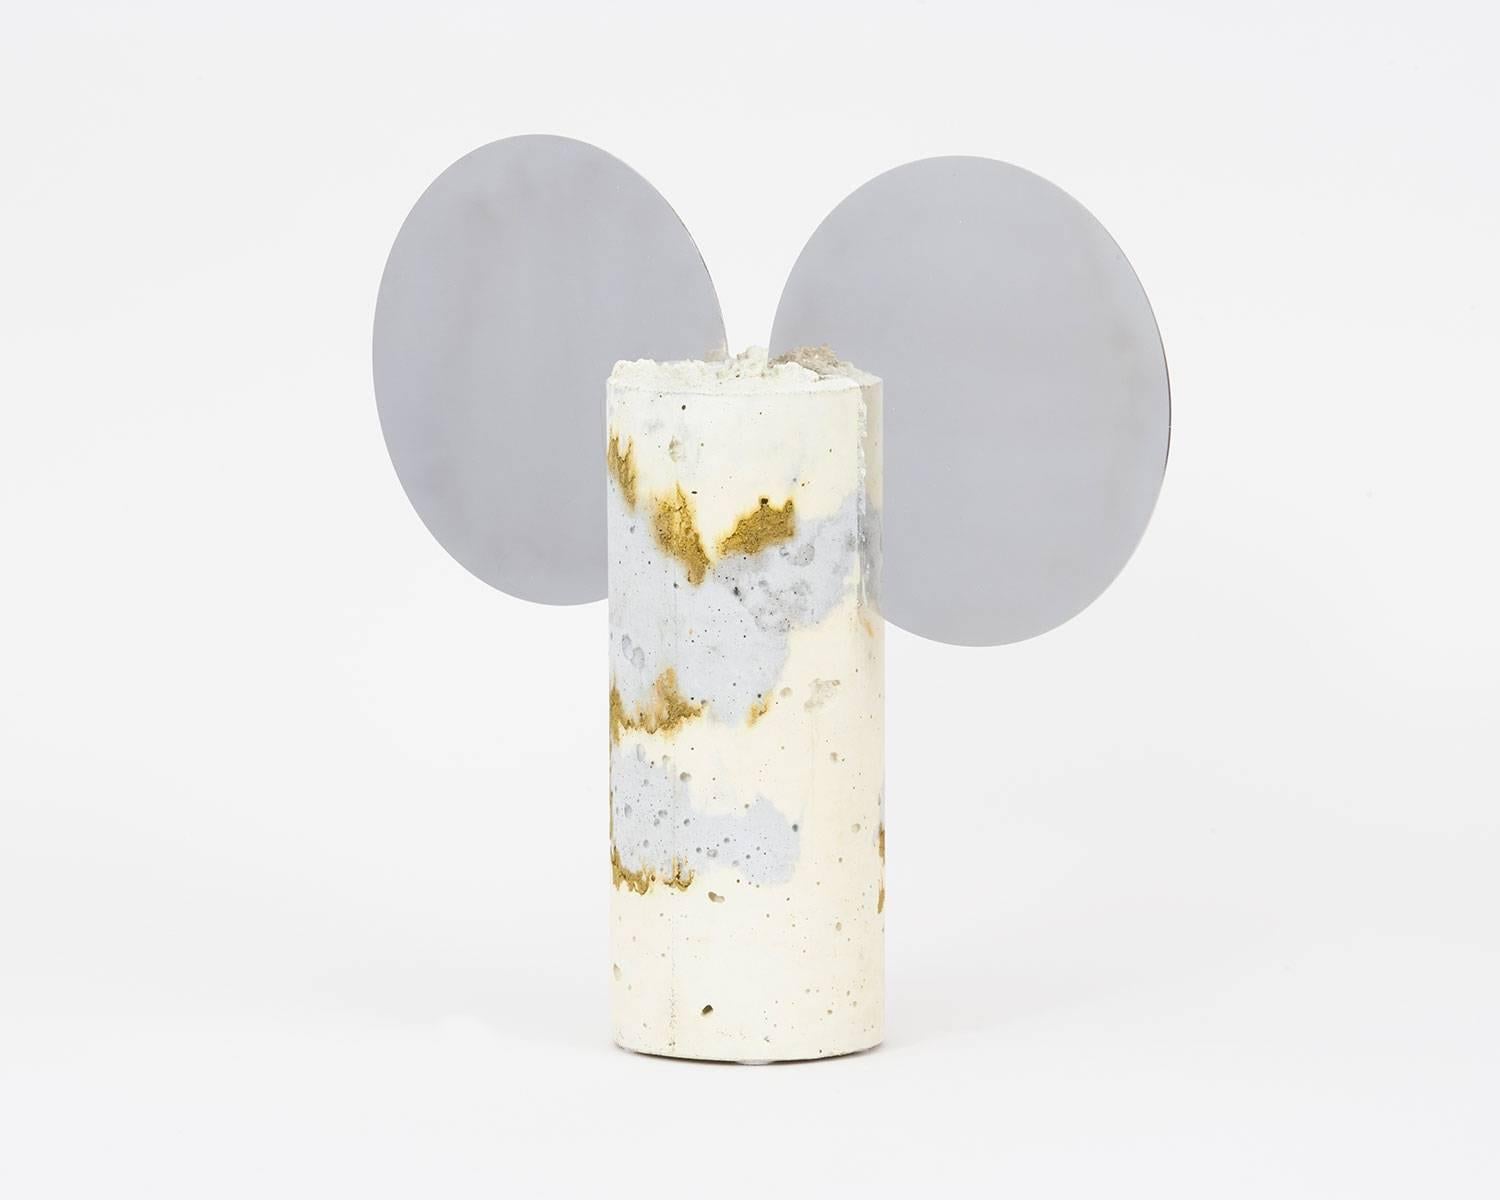 Danish Cement Mirror Objects by Pettersen & Hein